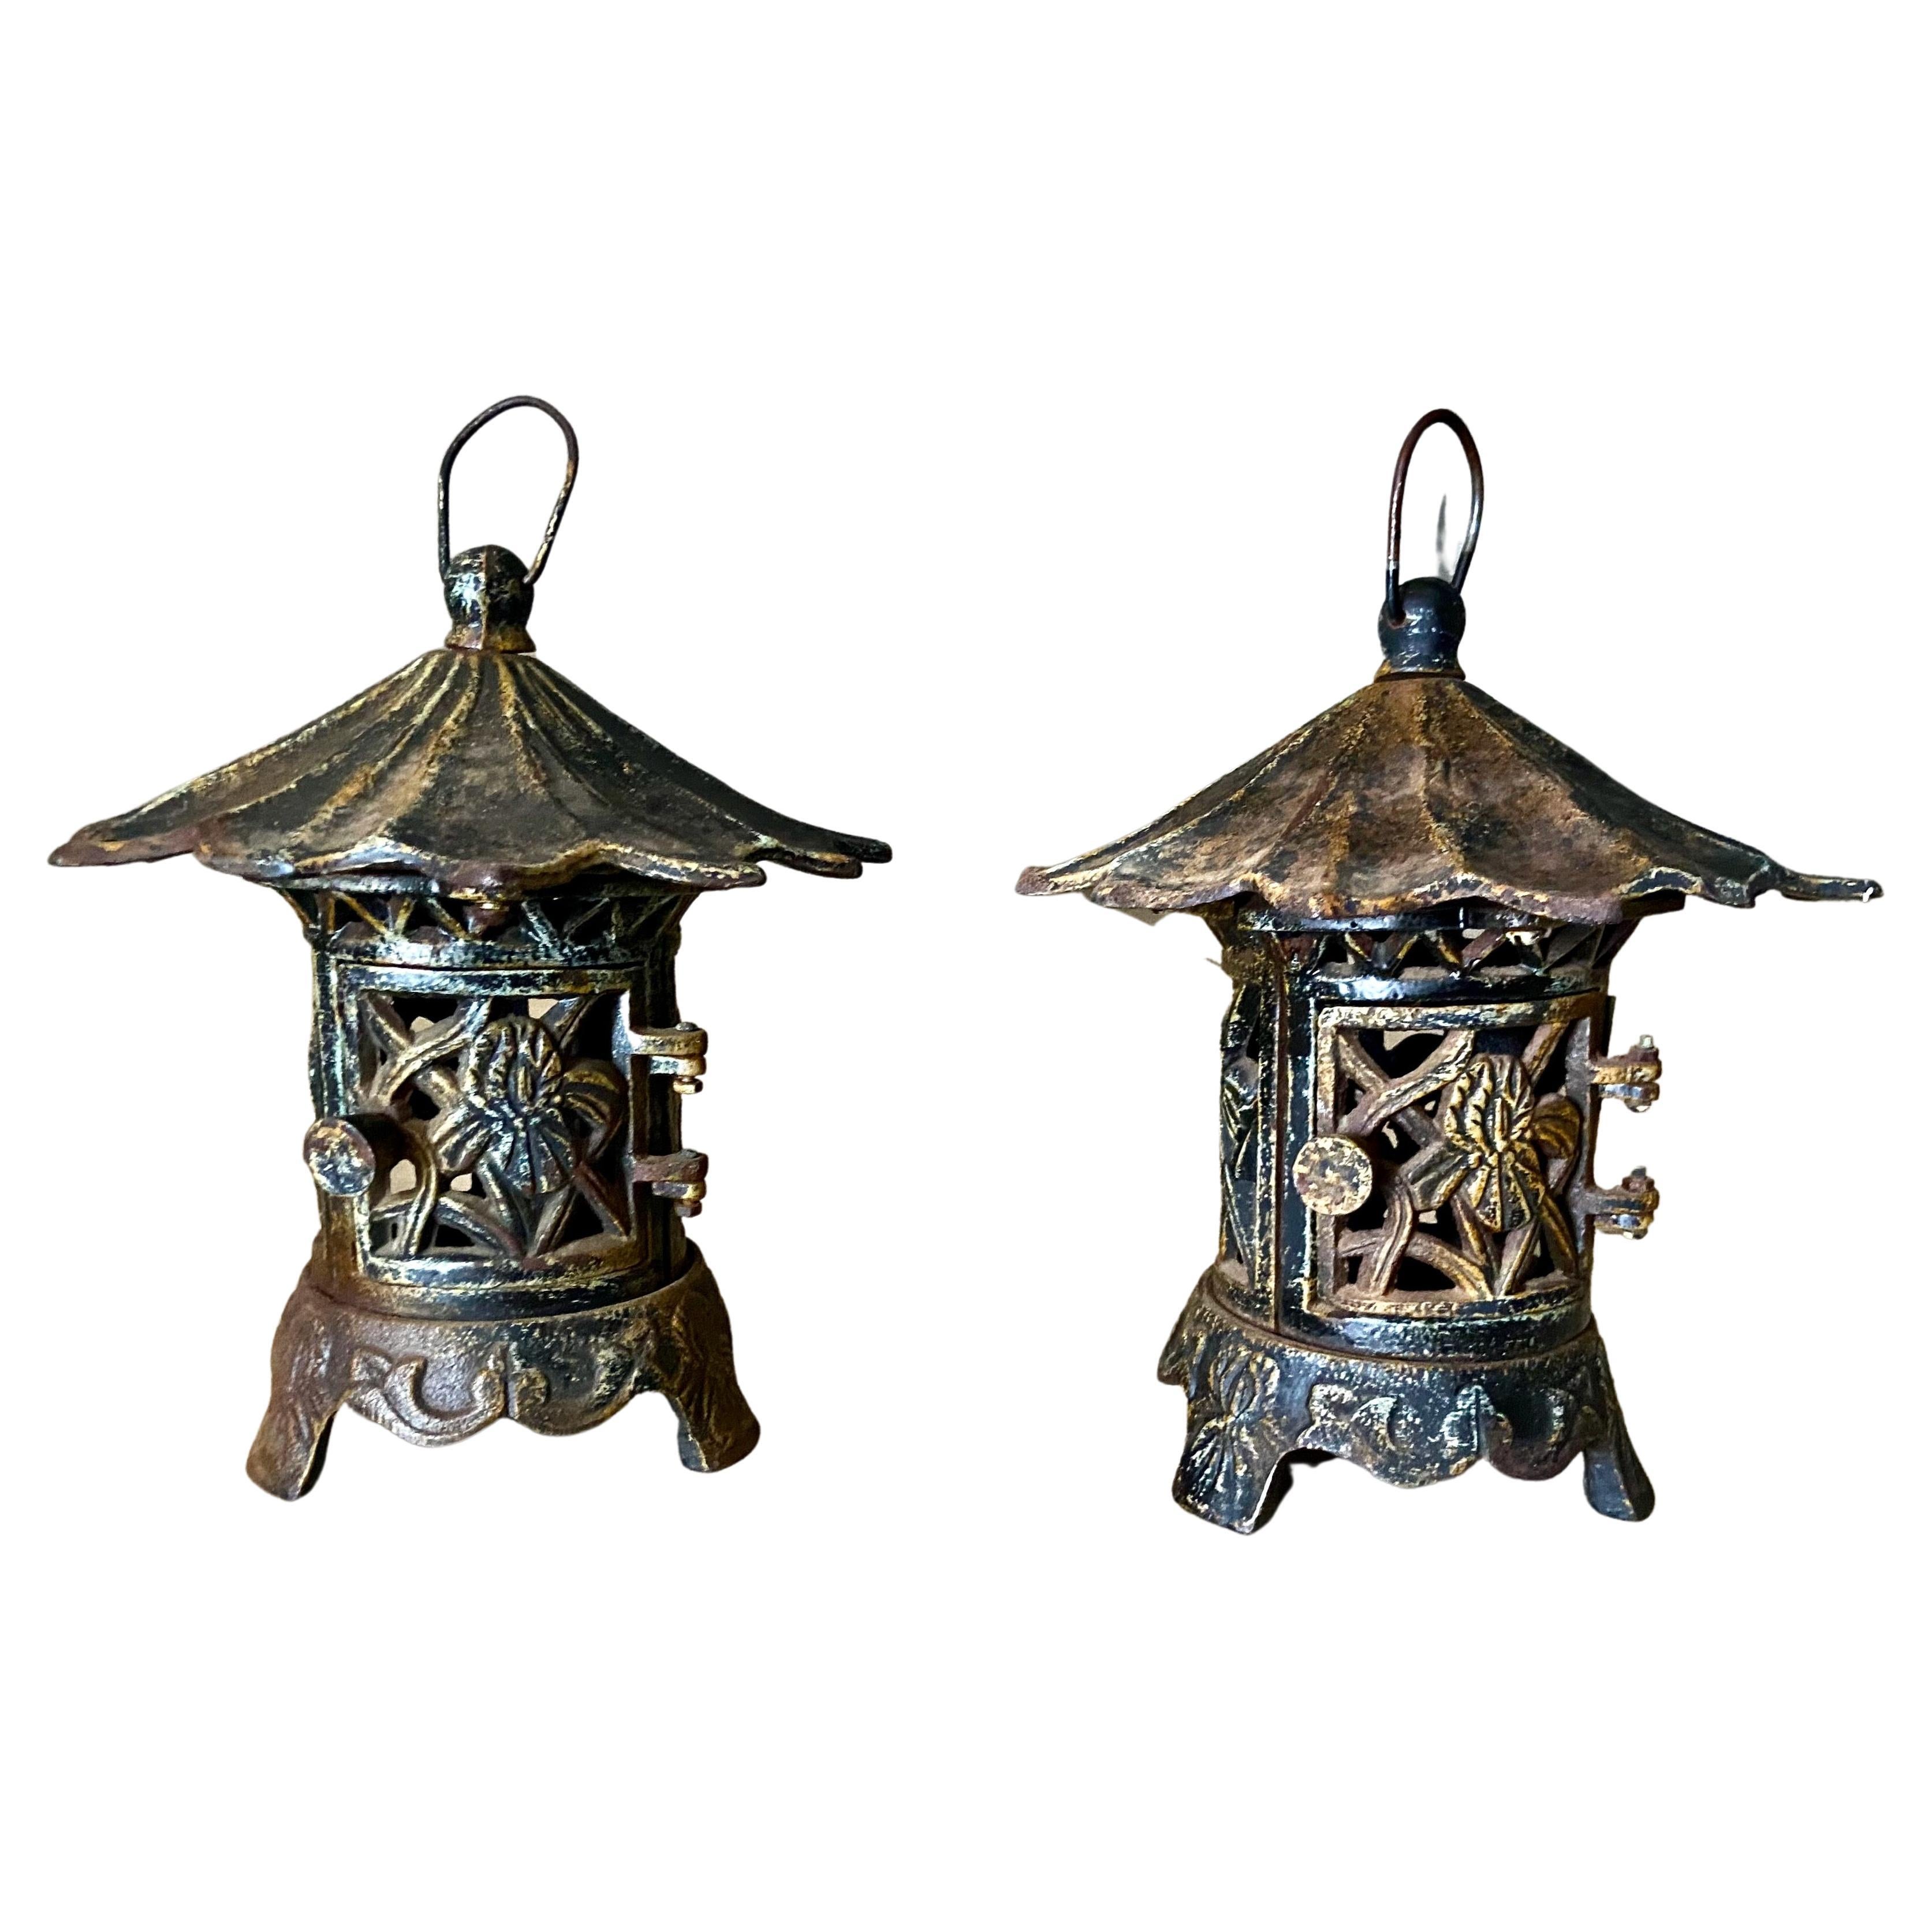 Paire de lanternes de jardin chinoises anciennes en fer en forme de pagode